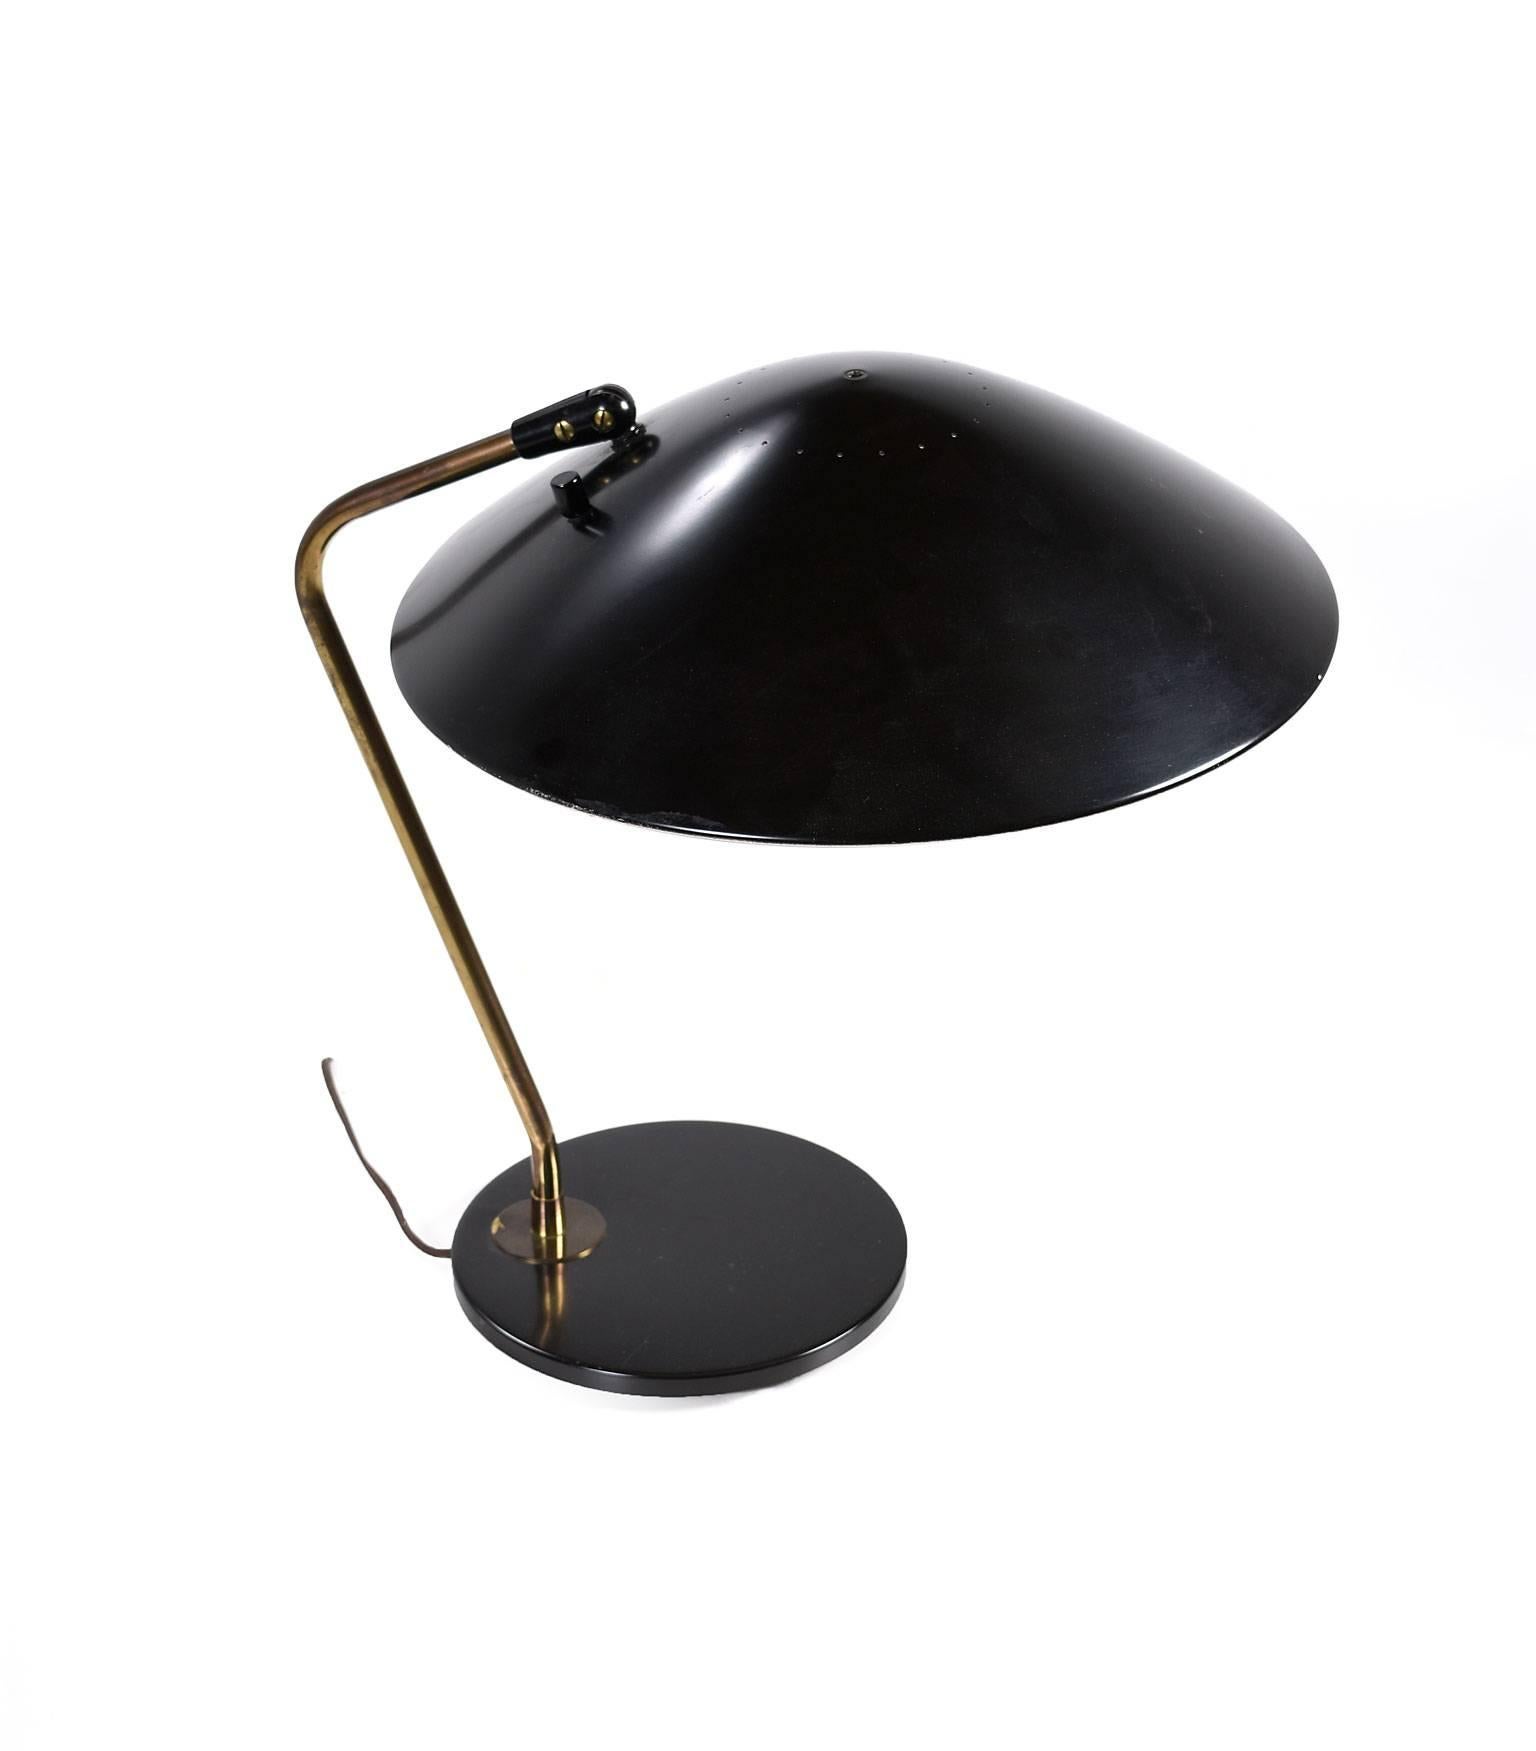 American Mid-Century Modern Gerald Thurston for Lightolier Black Enamel and Brass Lamp